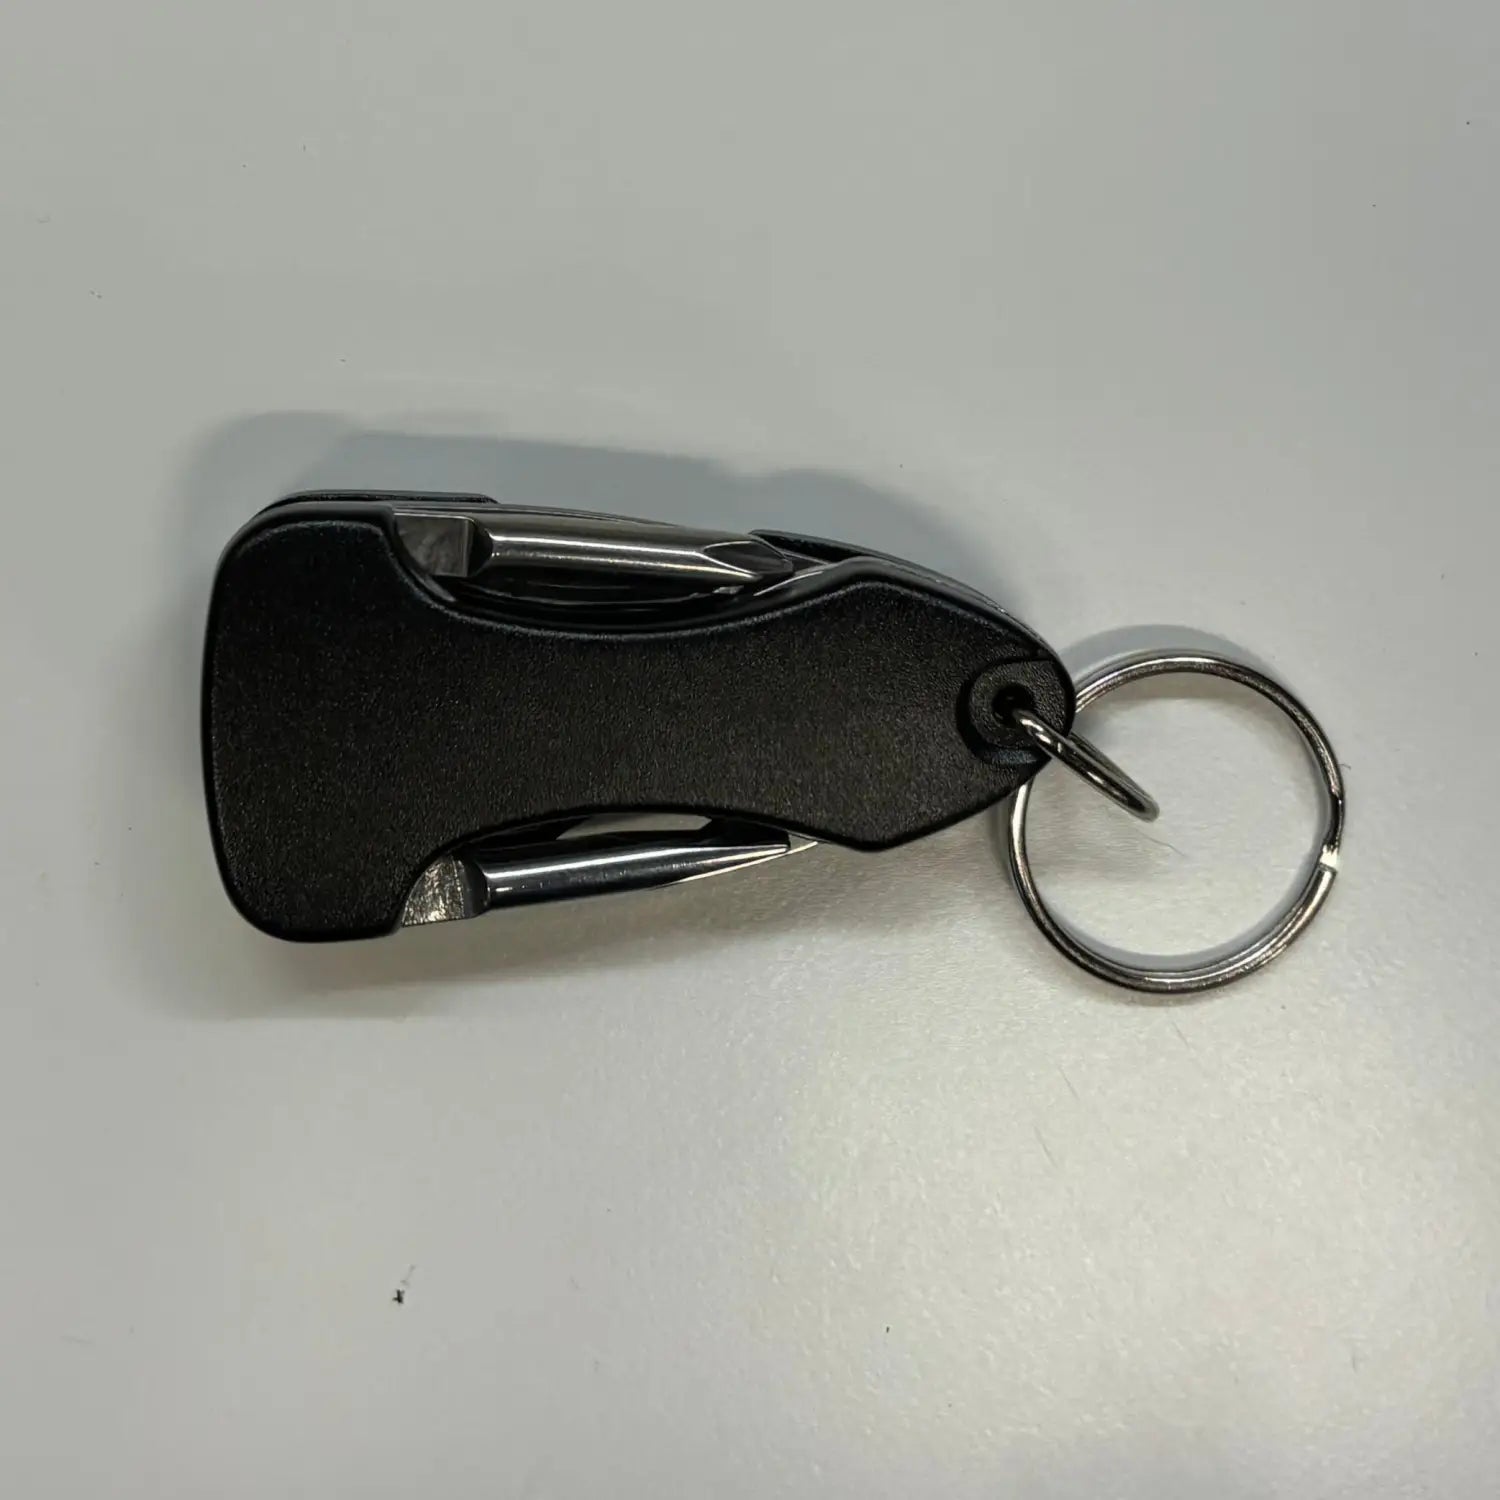 Multitool Keychain - Black - Multitool